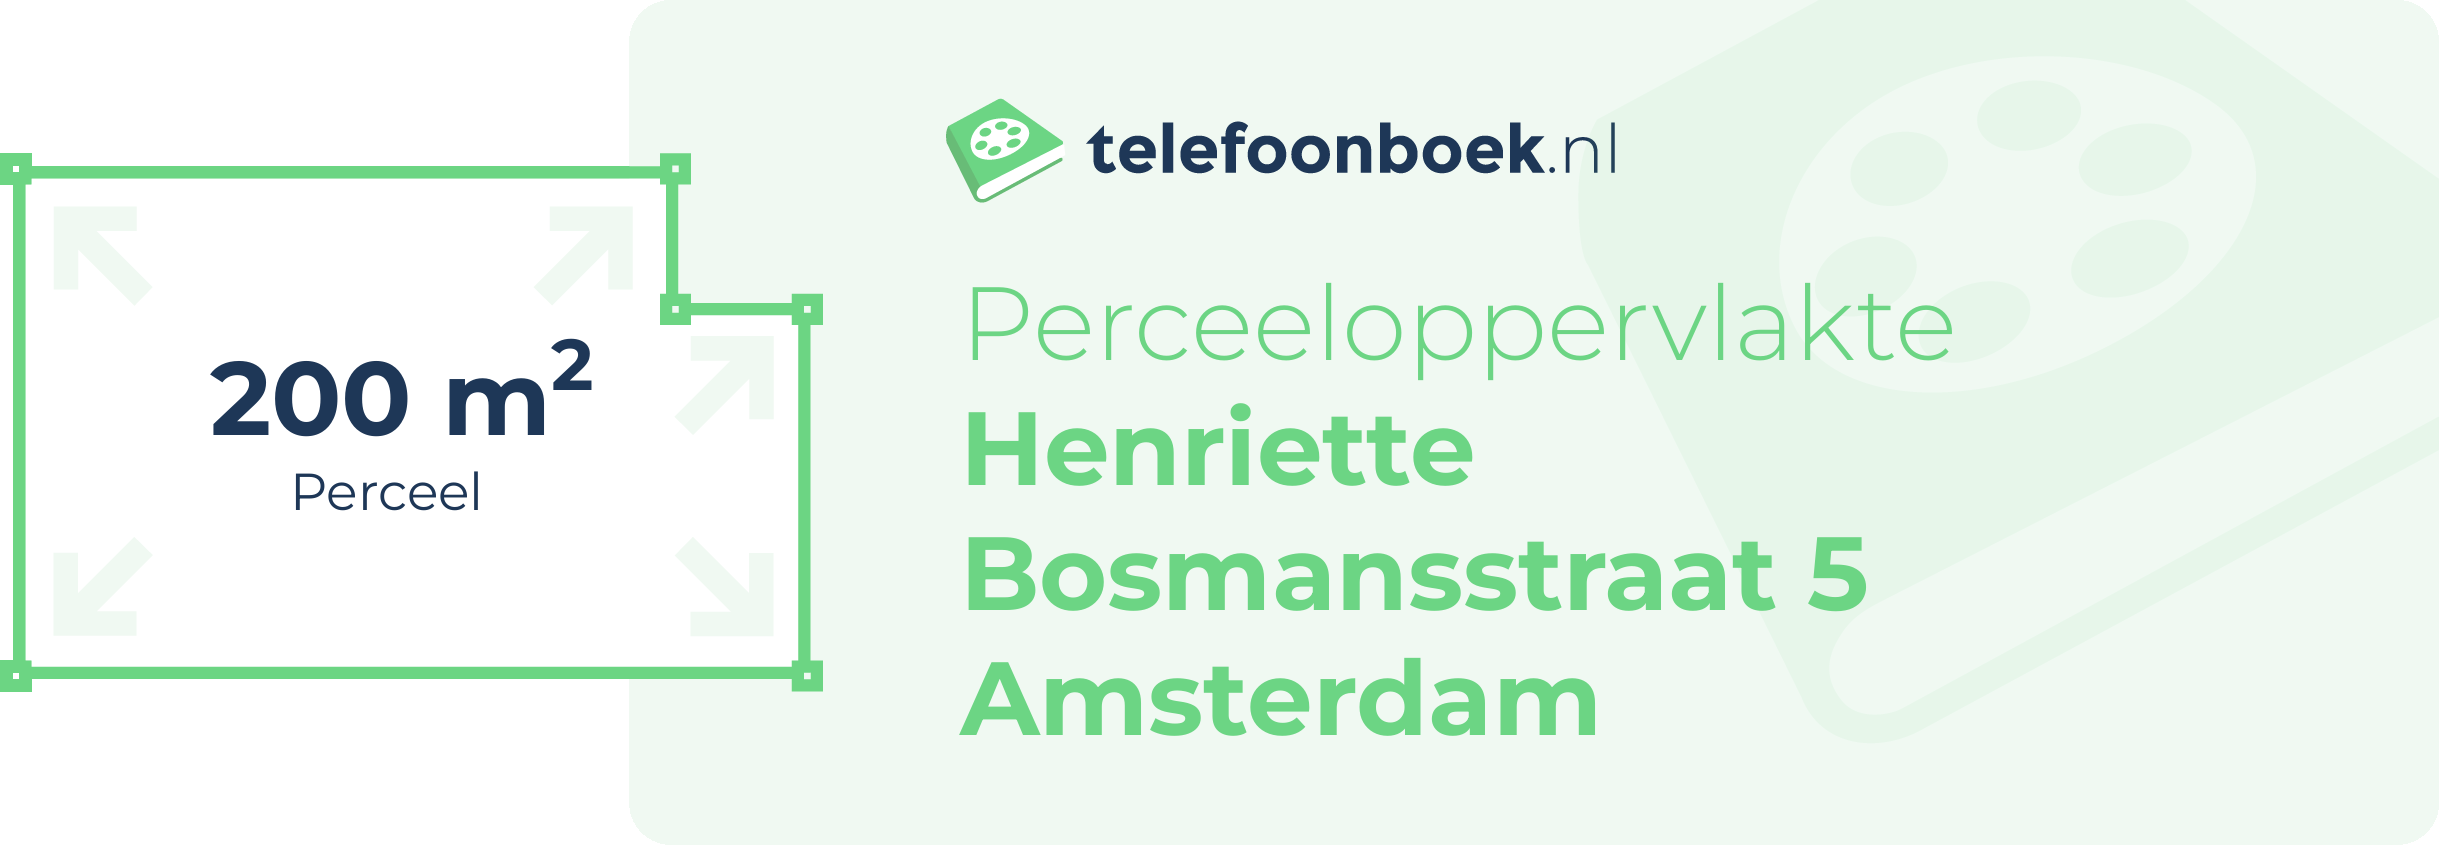 Perceeloppervlakte Henriette Bosmansstraat 5 Amsterdam